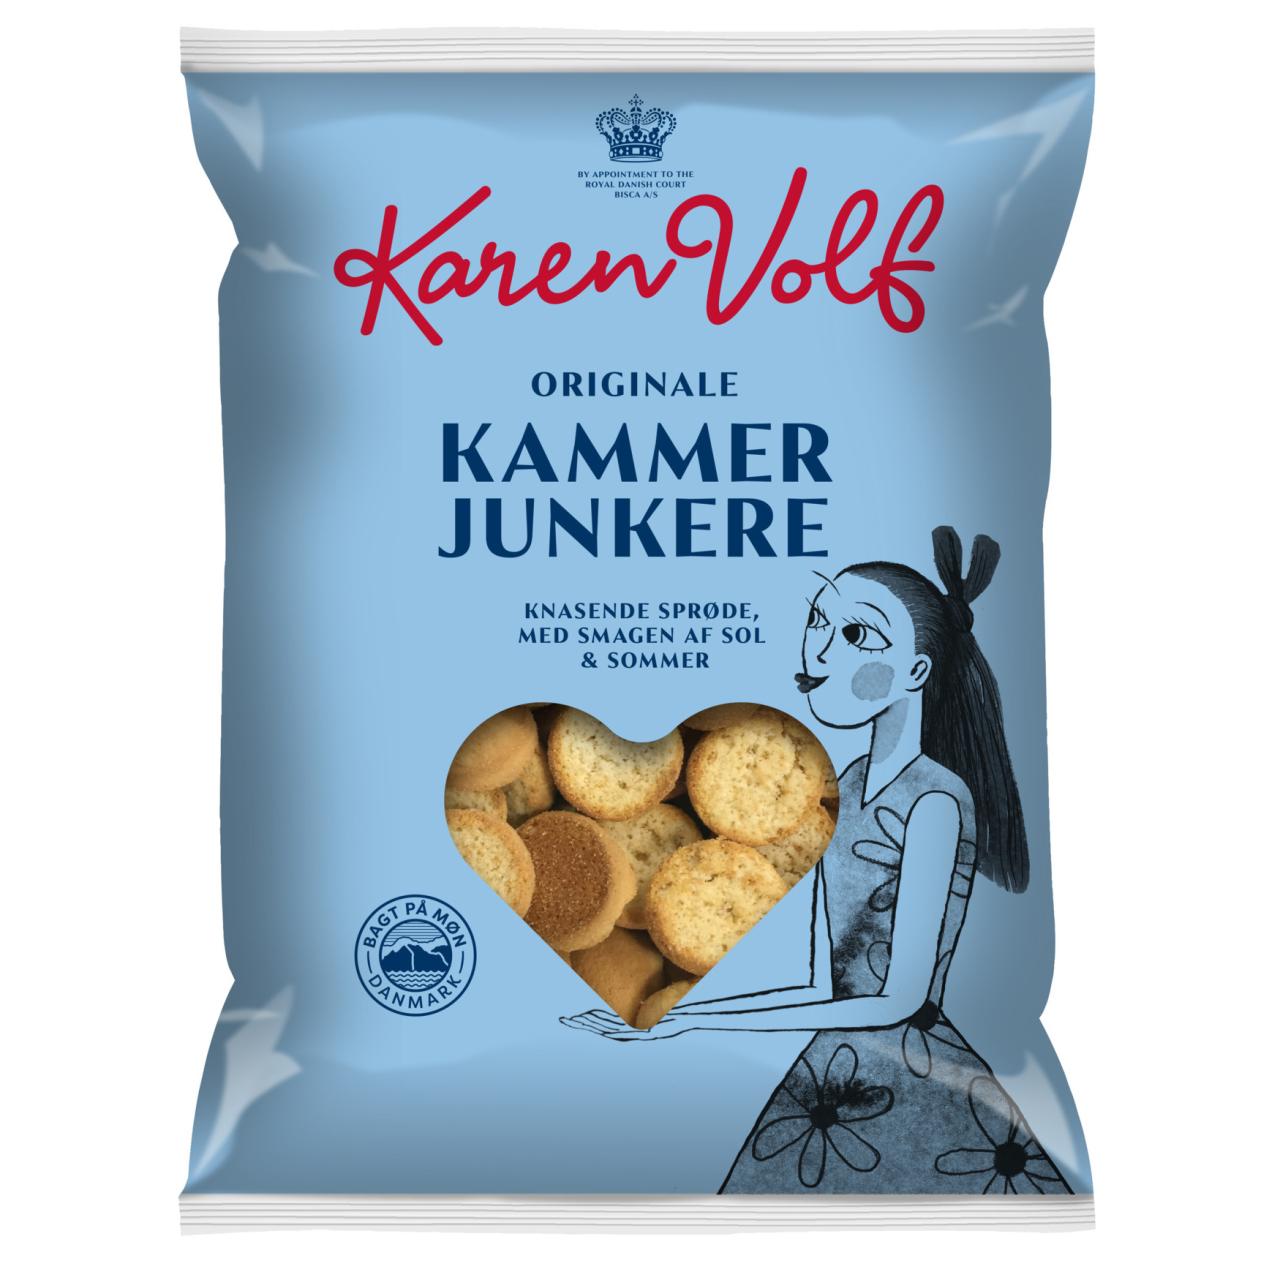 Karen Volf Kammer Junkere 400g